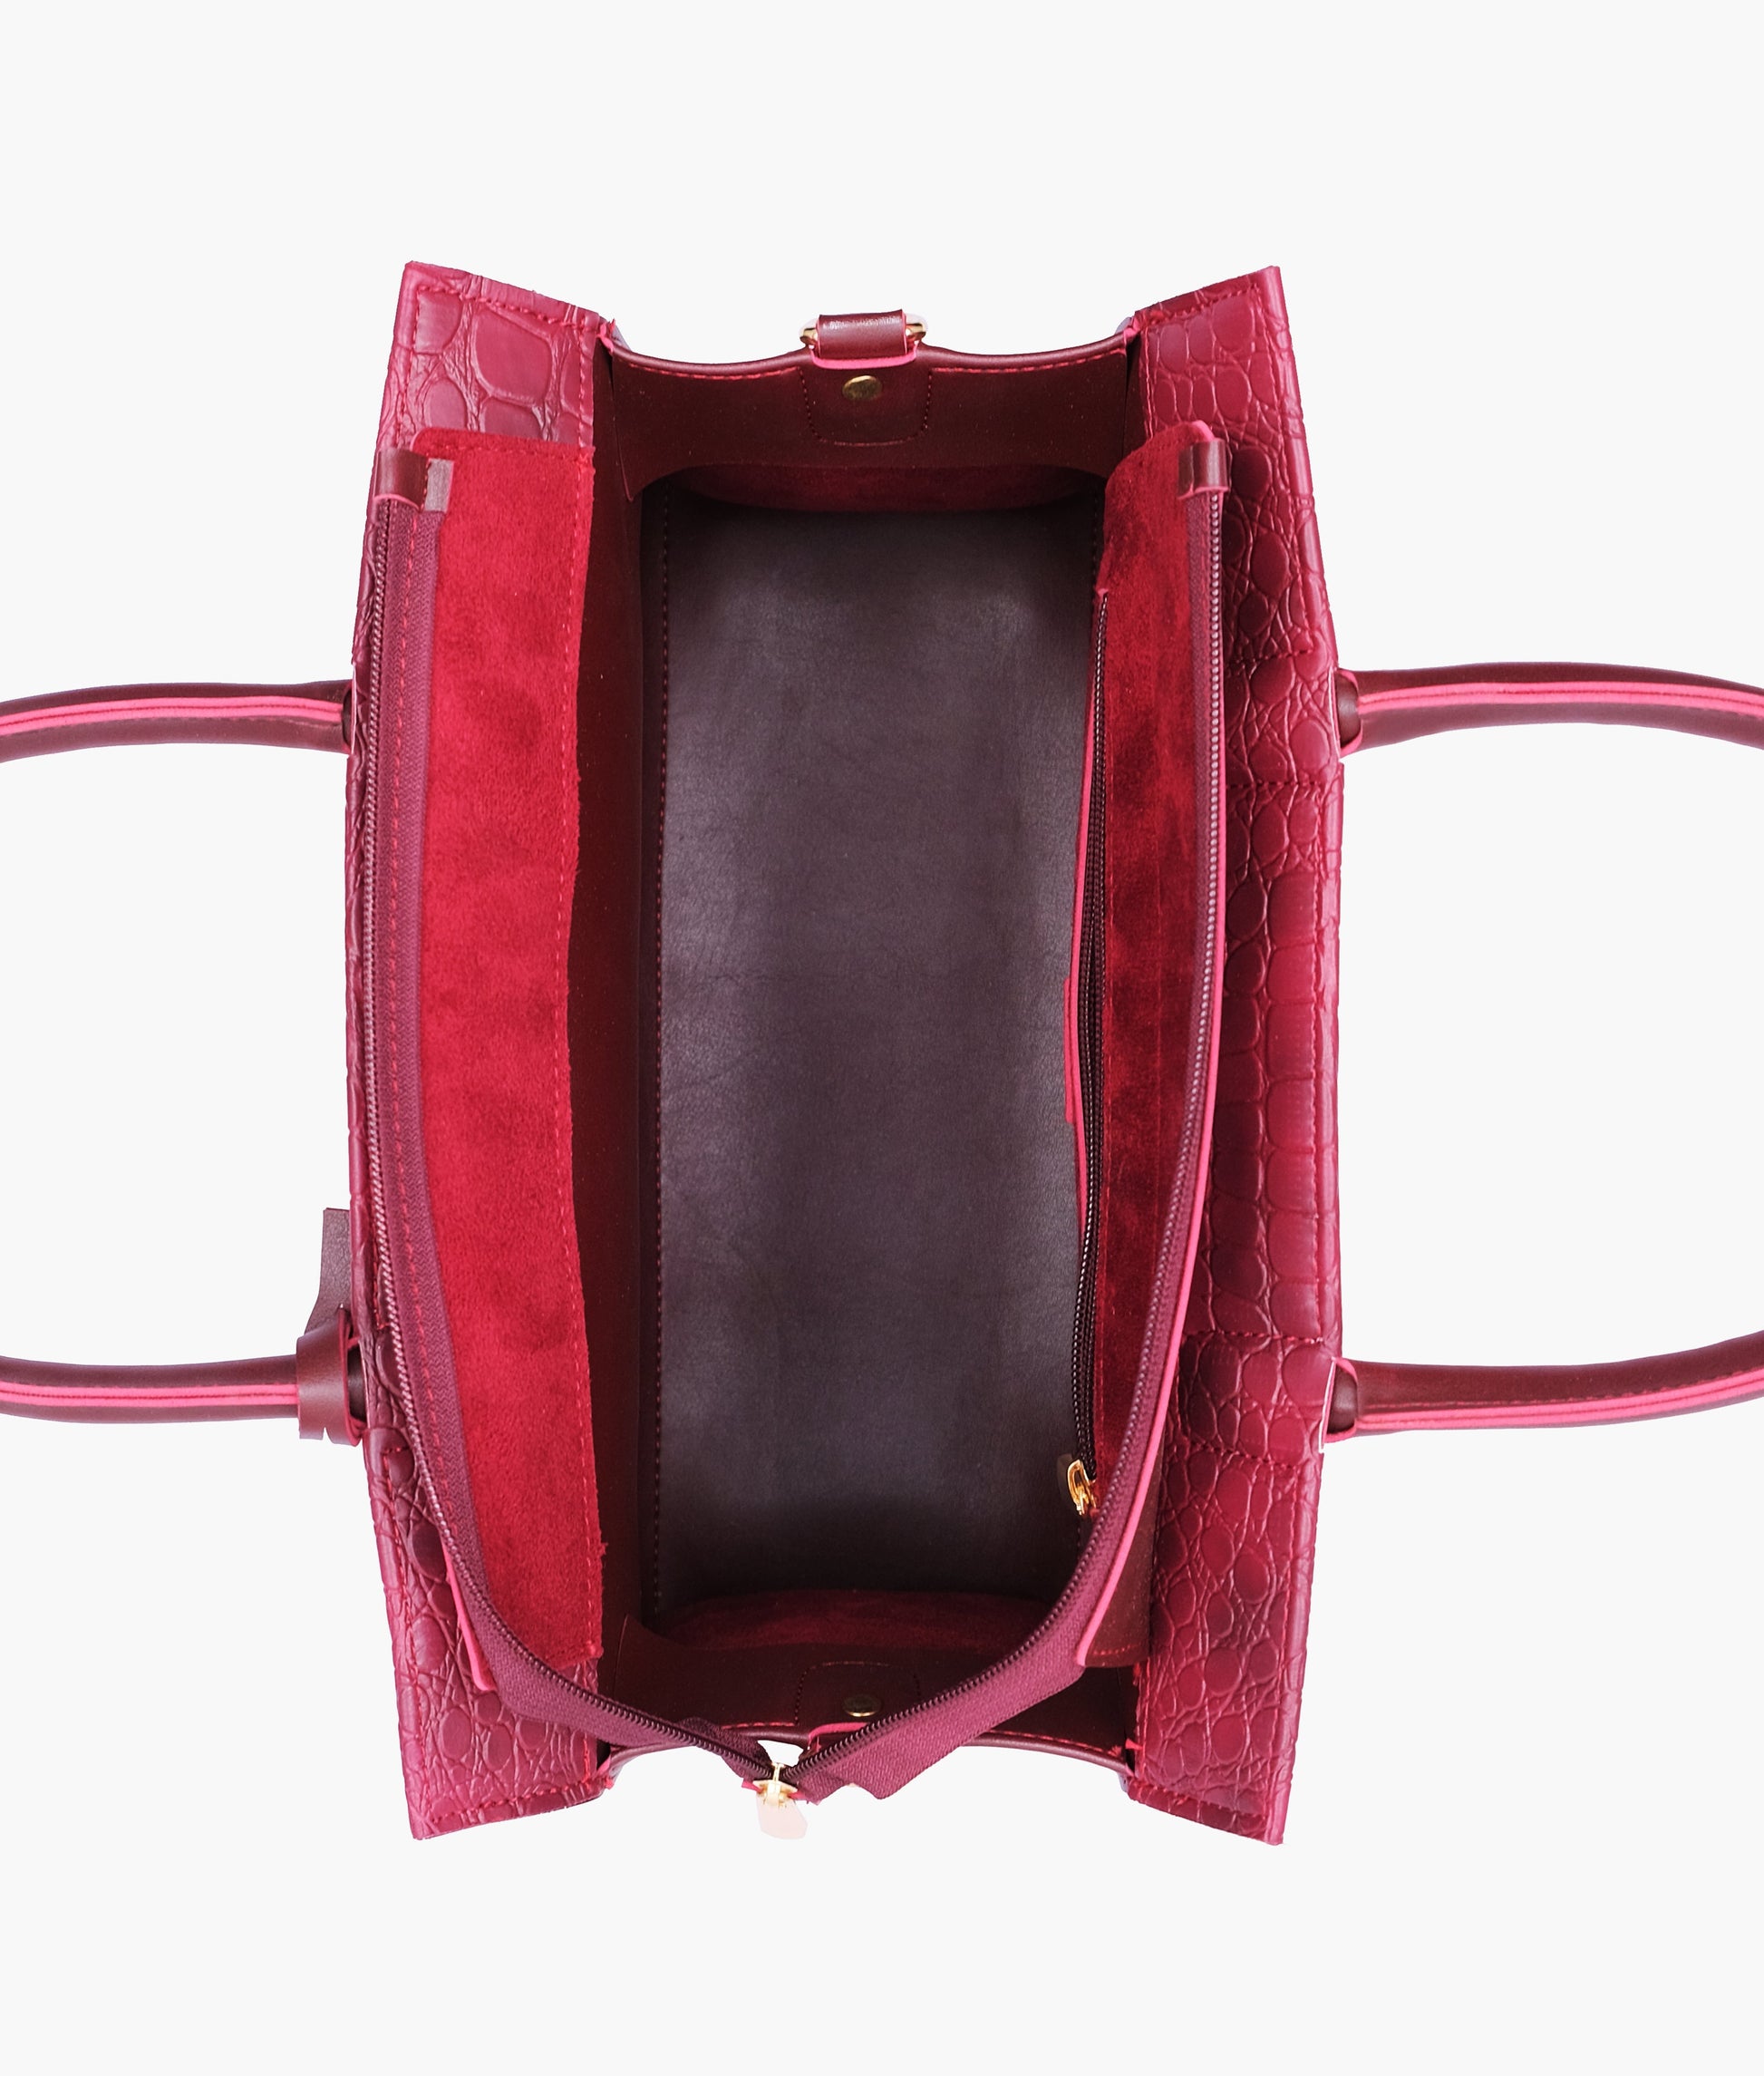 Buy Burgundy Crocodile Vintage Handbag - Brown in Pakistan